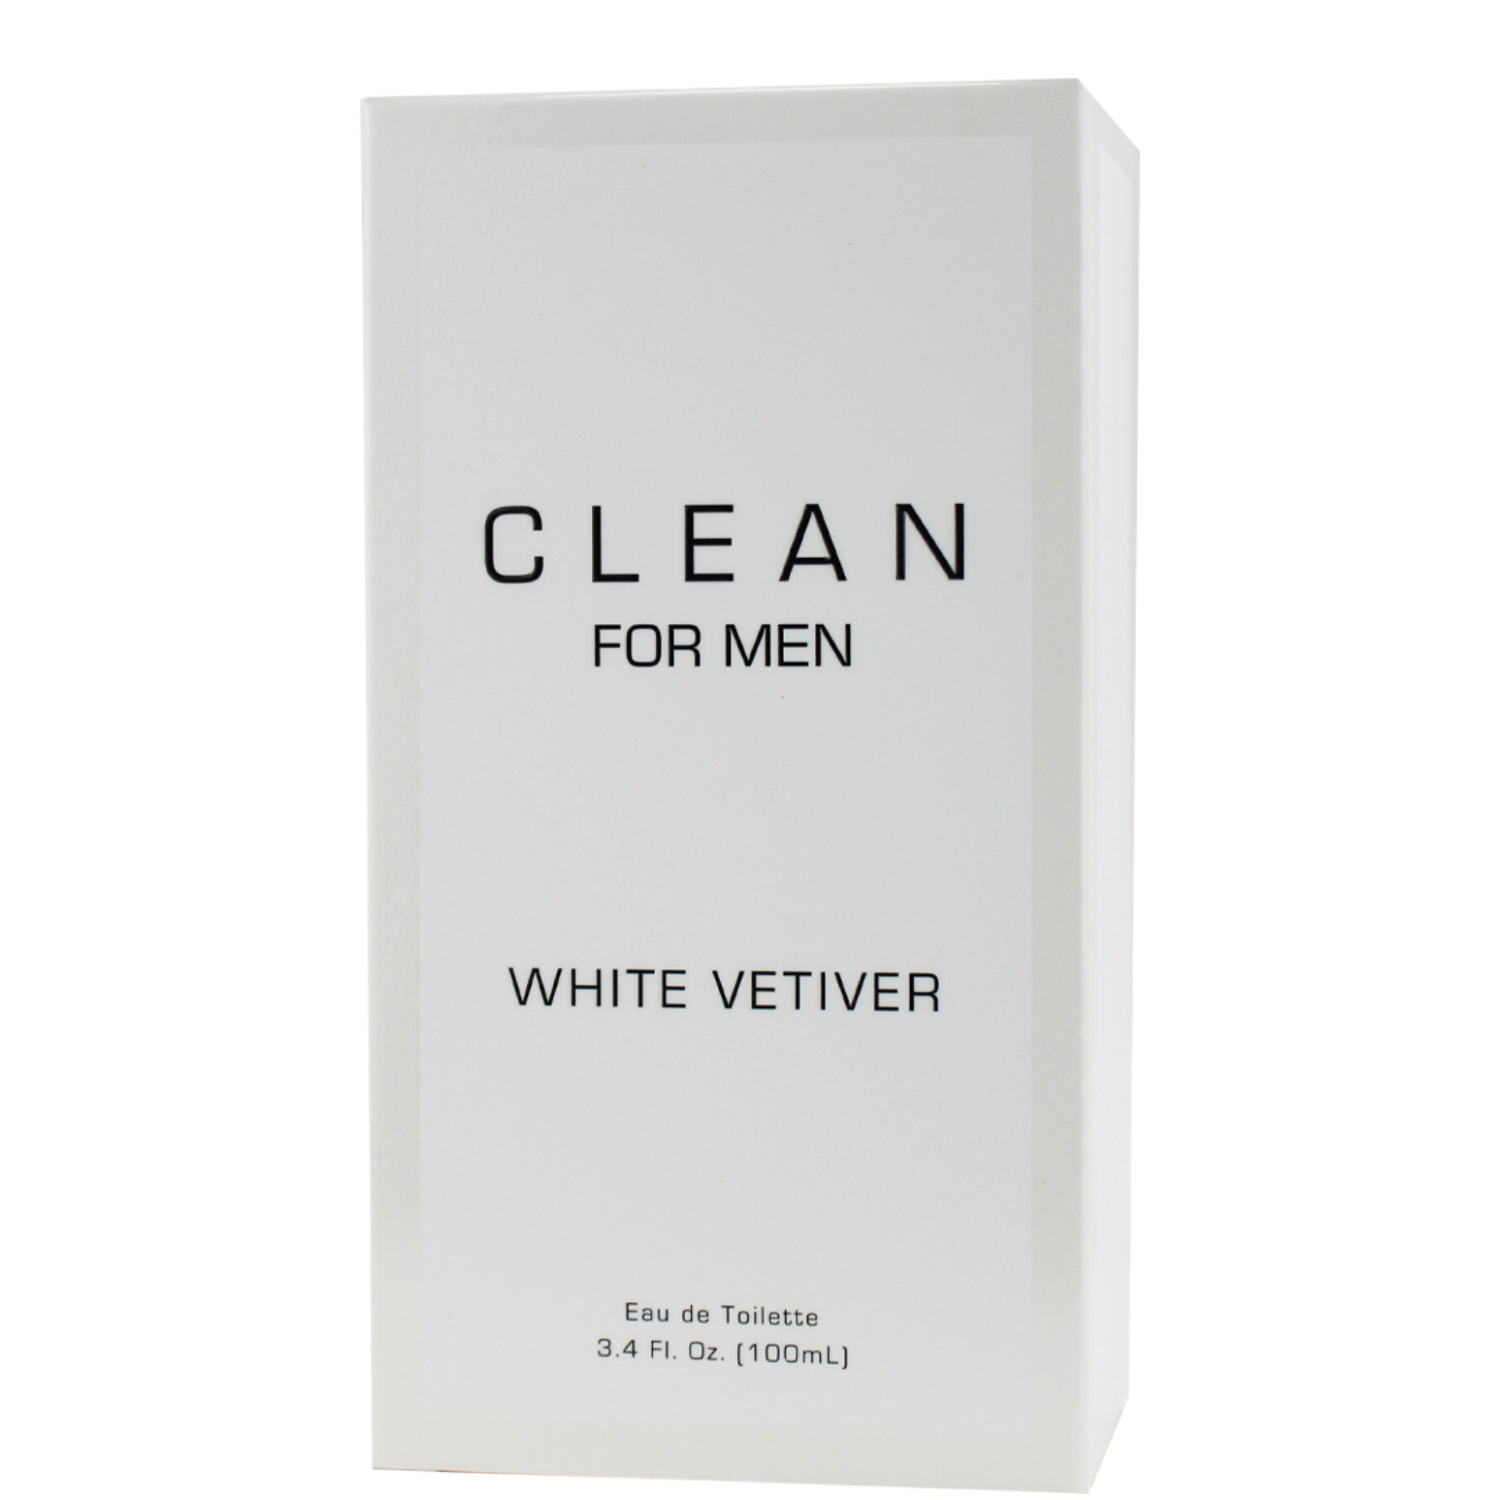 Clean for Men White Vetiver Eau de Toilette 100ml